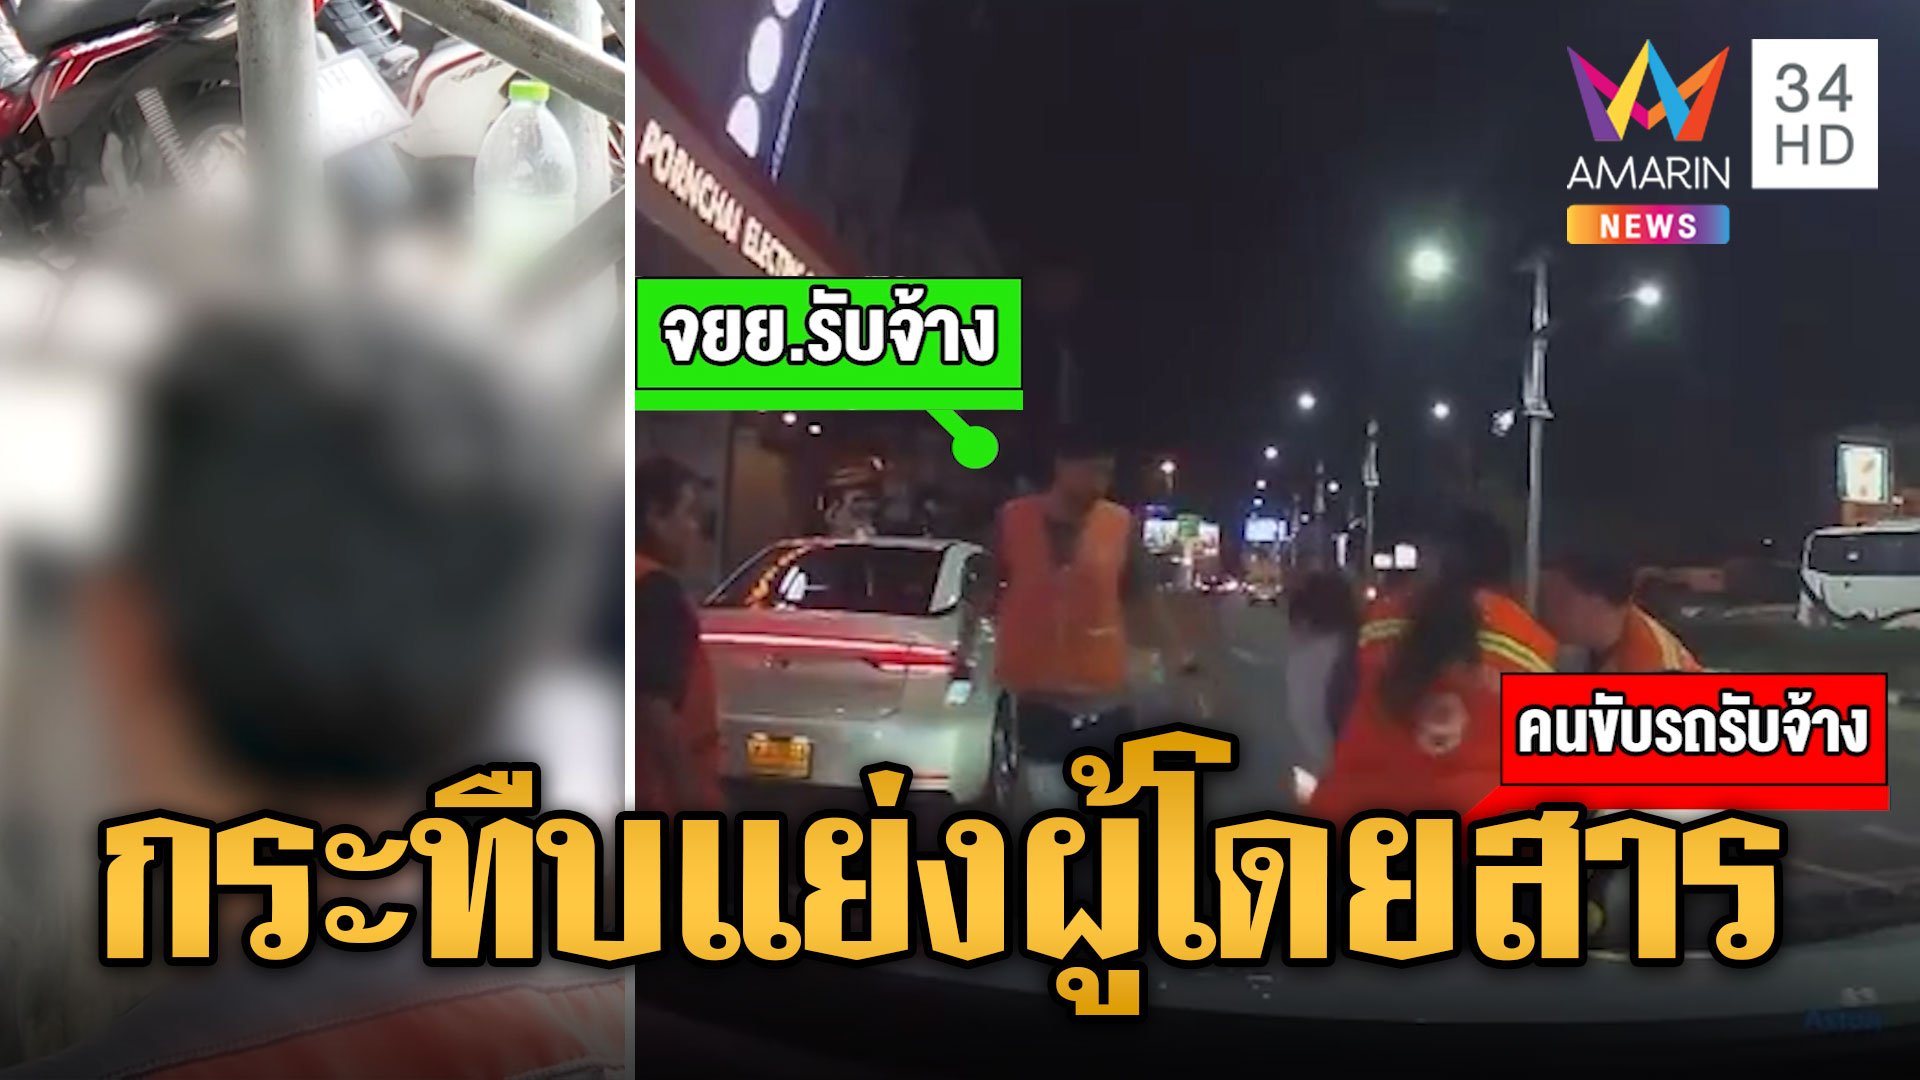 พัทยาเดือด! วินรุมกระทืบคนขับรถรับจ้าง ปมแย่งผู้โดยสาร | ข่าวเที่ยงอมรินทร์ | 12 มี.ค. 67 | AMARIN TVHD34